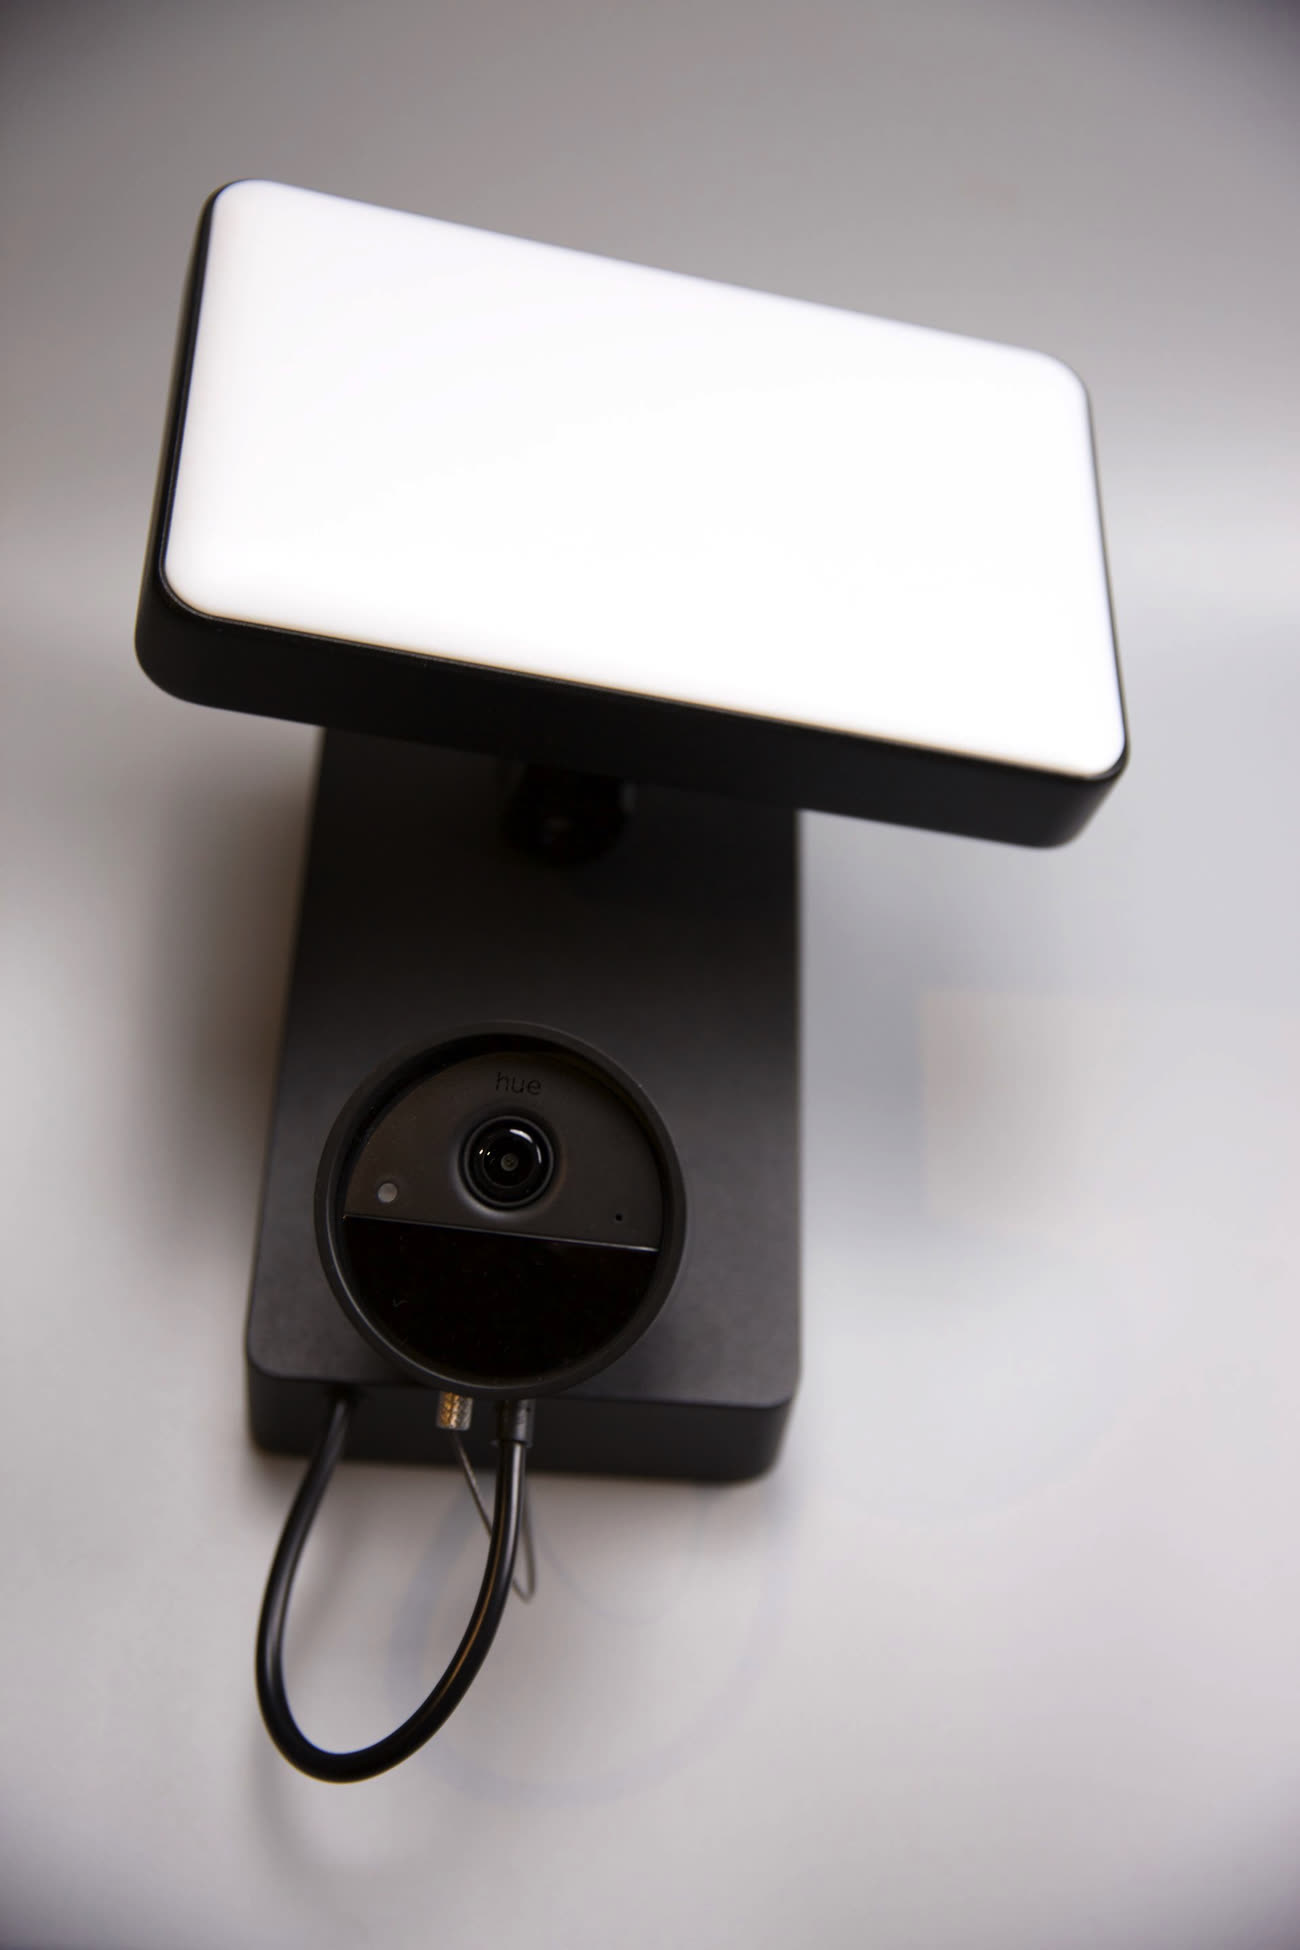 Philips InSight, une caméra de surveillance aussi pratique que compacte